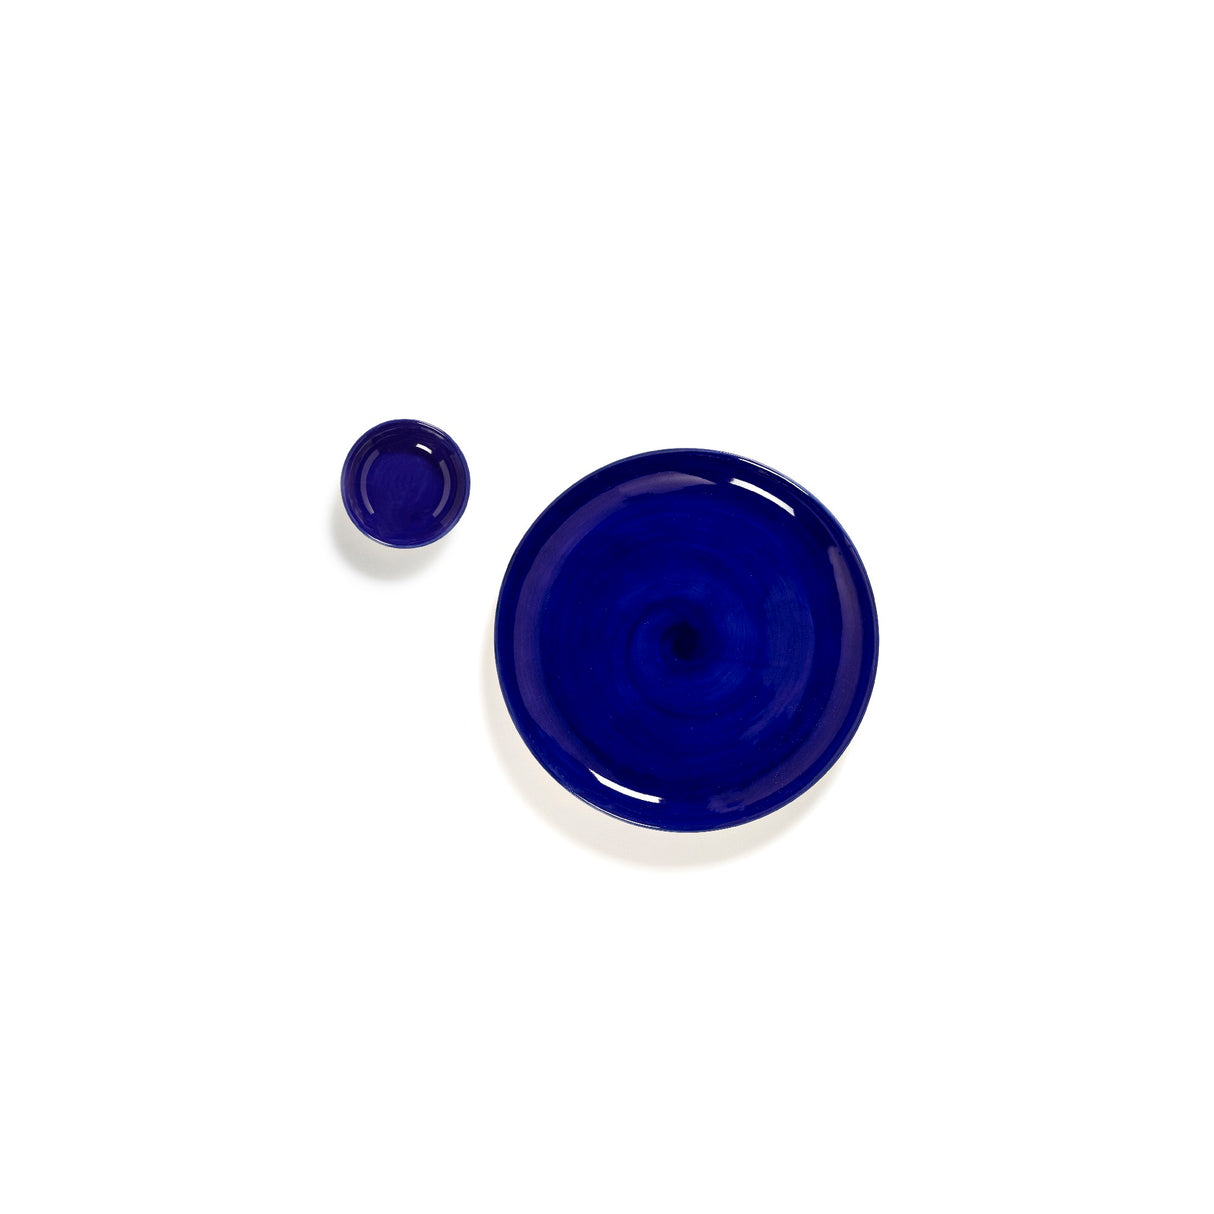 Ottolenghi Schale 8-er Set Lapis Lazuli, Blau, D 7,5 cm